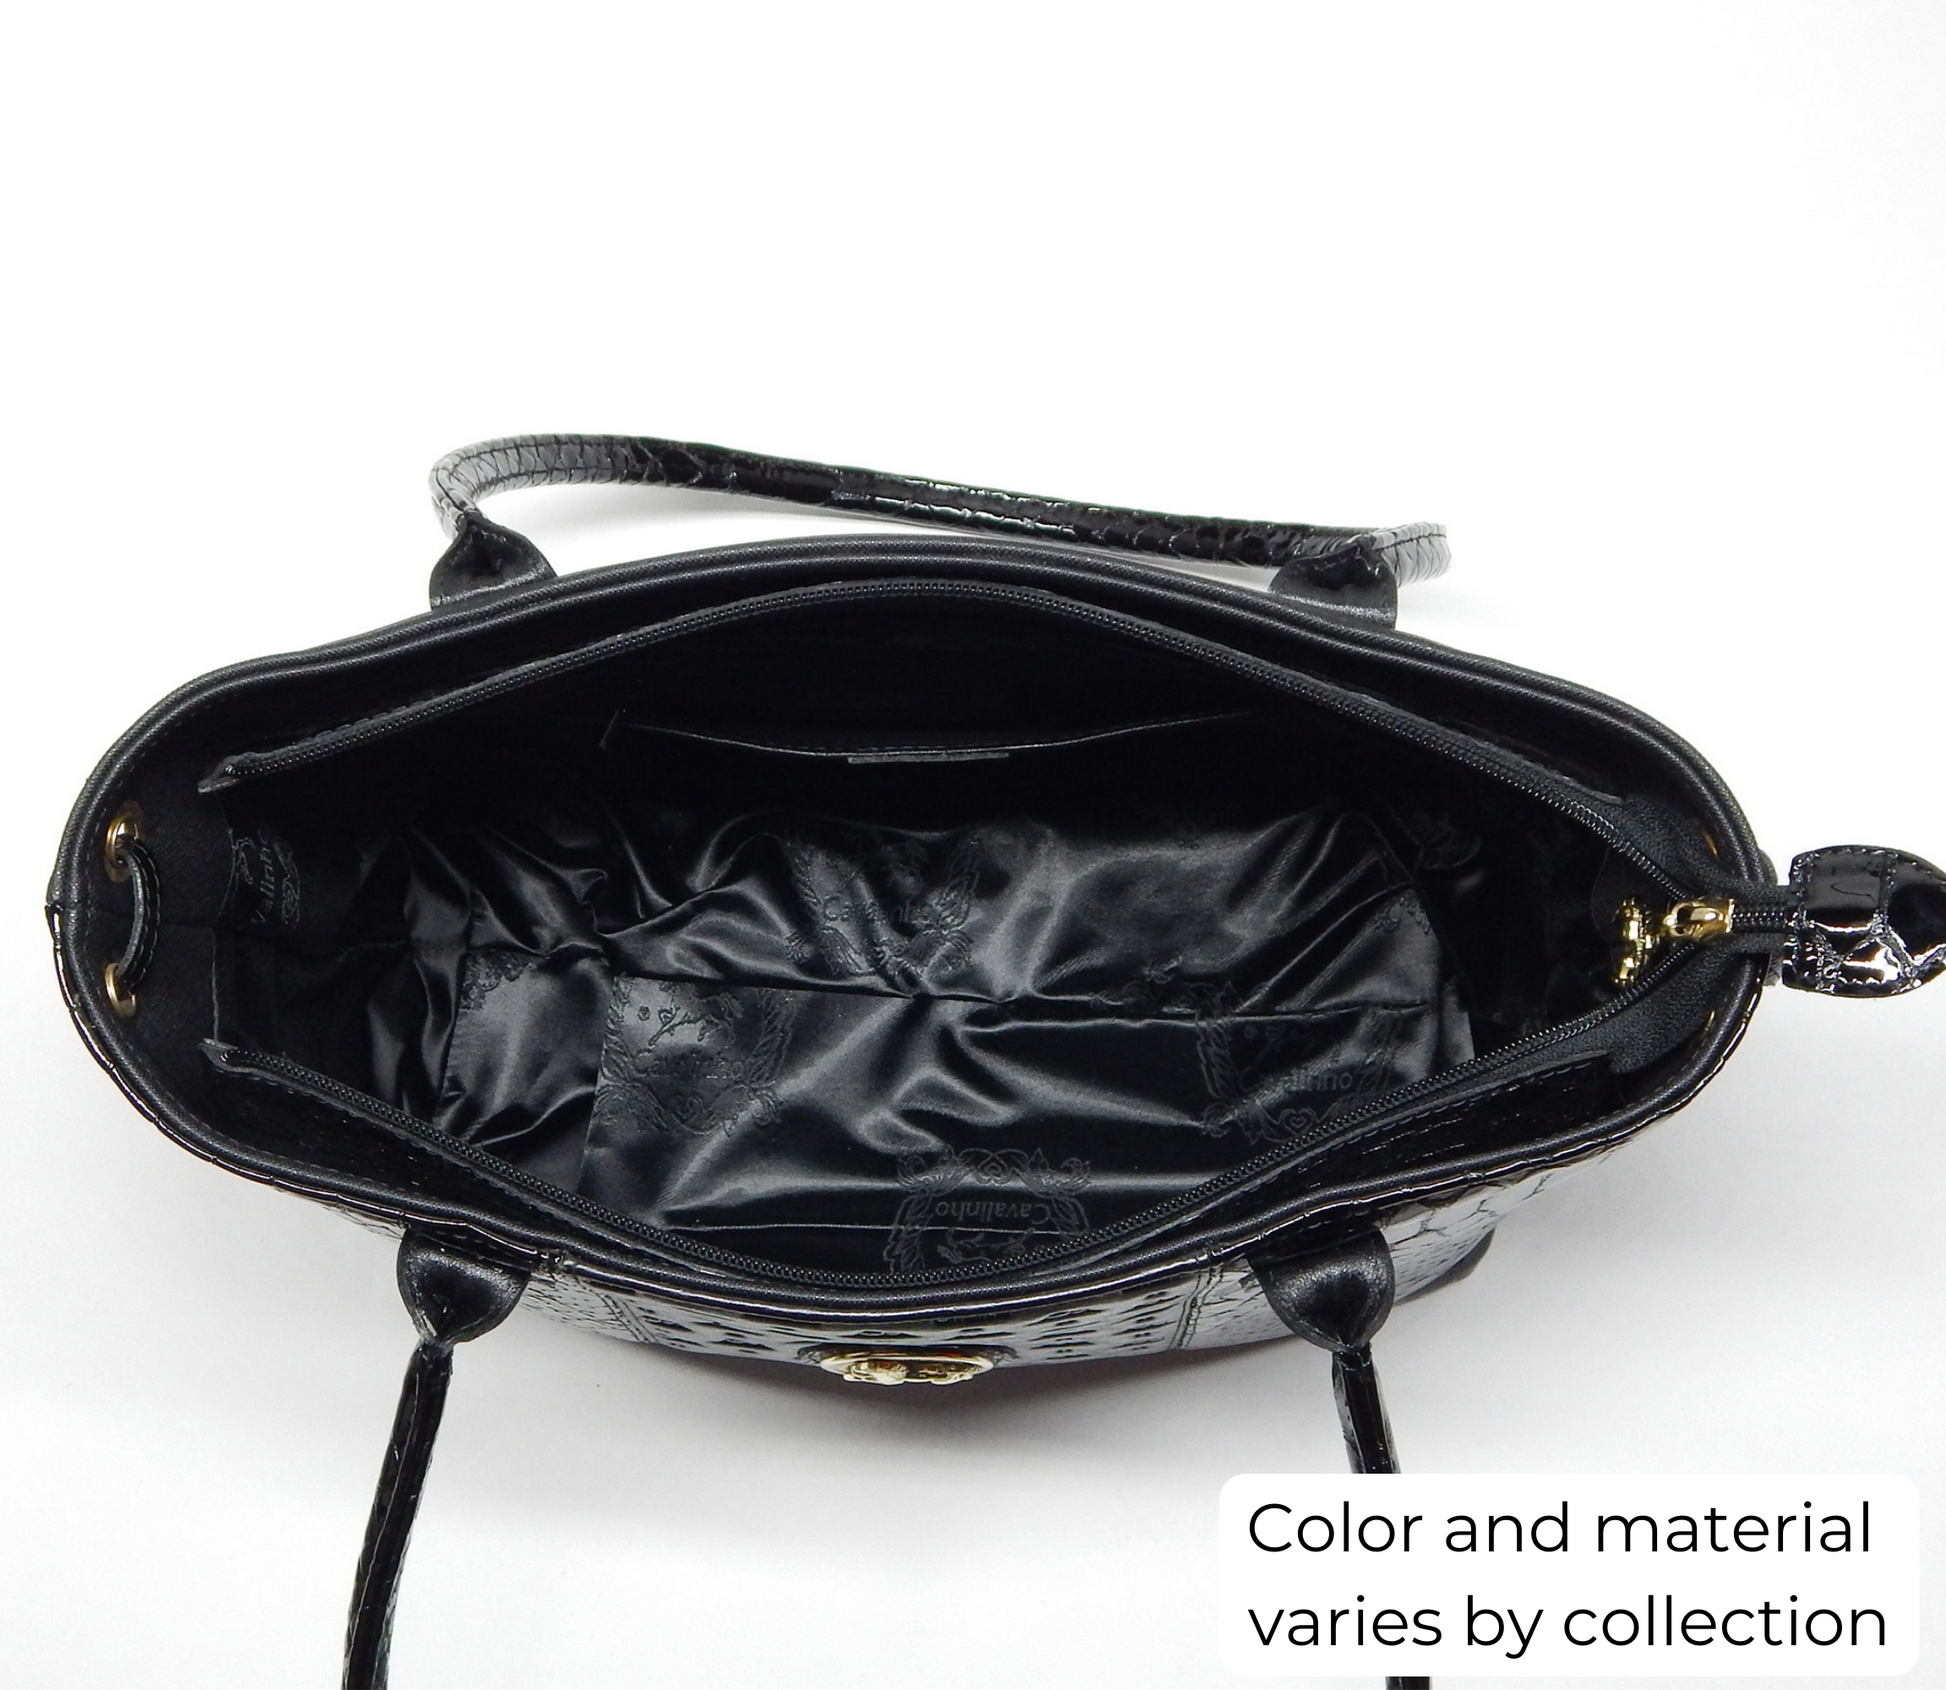 #color_ Black | Cavalinho Honor Shoulder Bag - Black - inside_0359_4883e6a2-9f21-4cc3-be31-819423104a3e